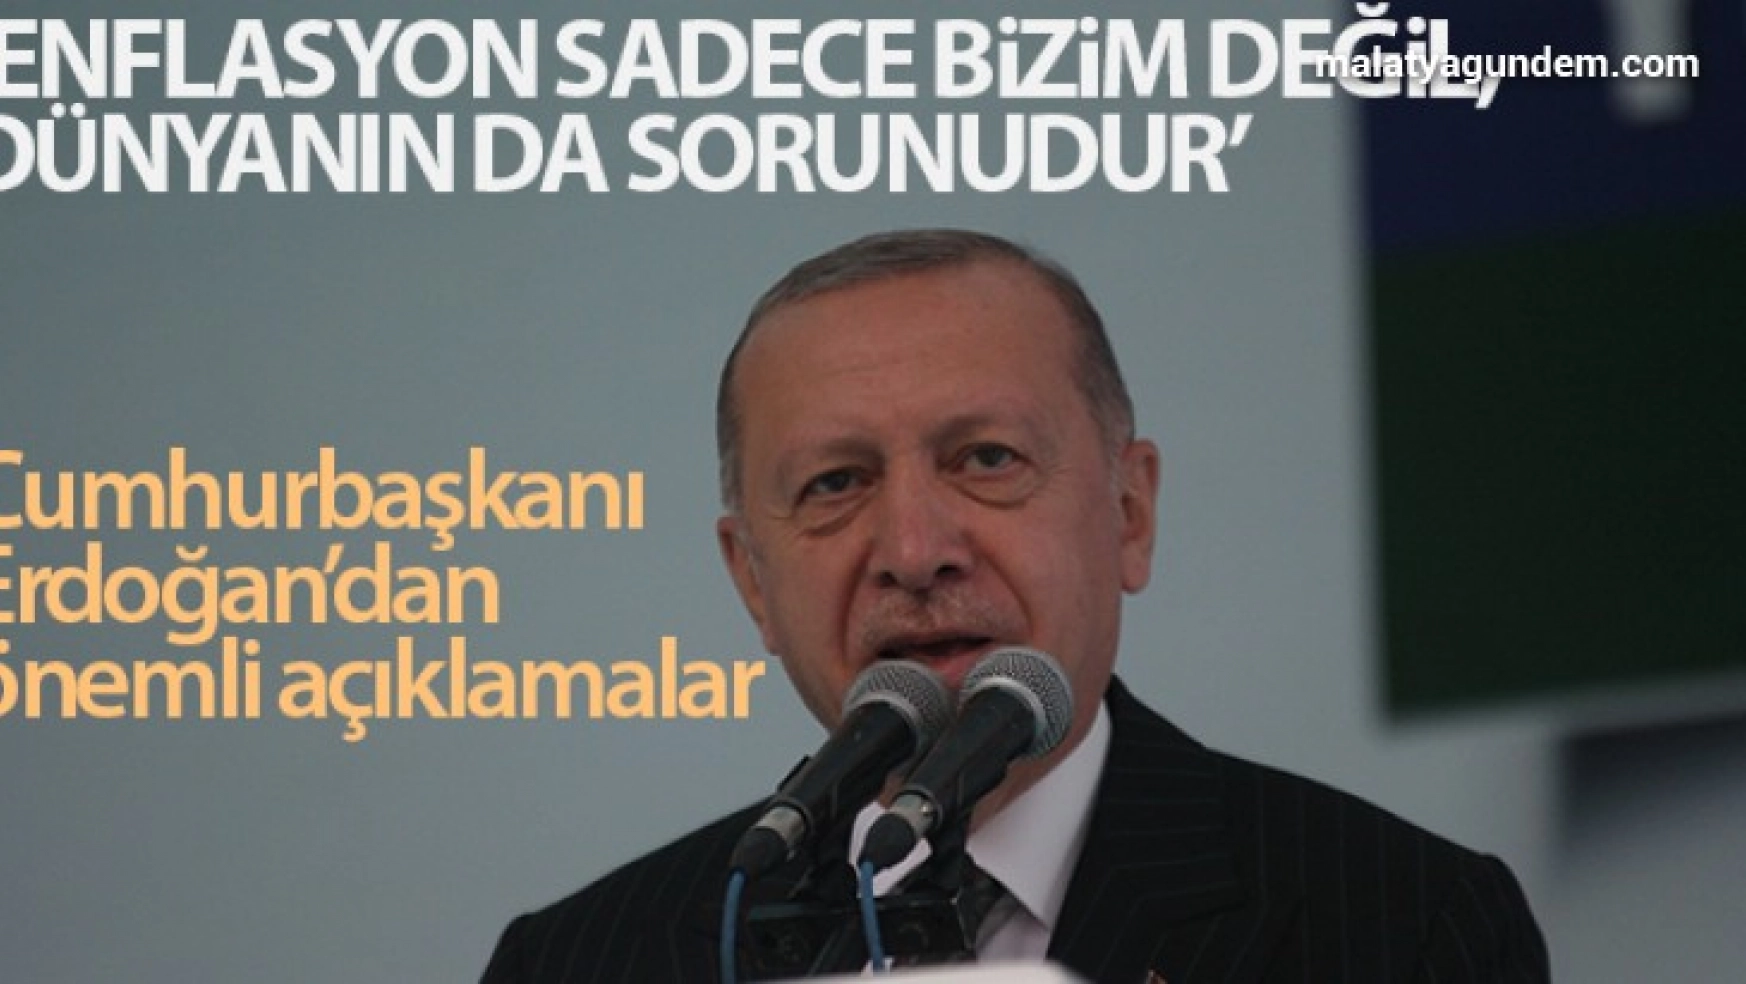 Erdoğan: 'Enflasyon sadece bizim değil dünyanın da sorunudur'